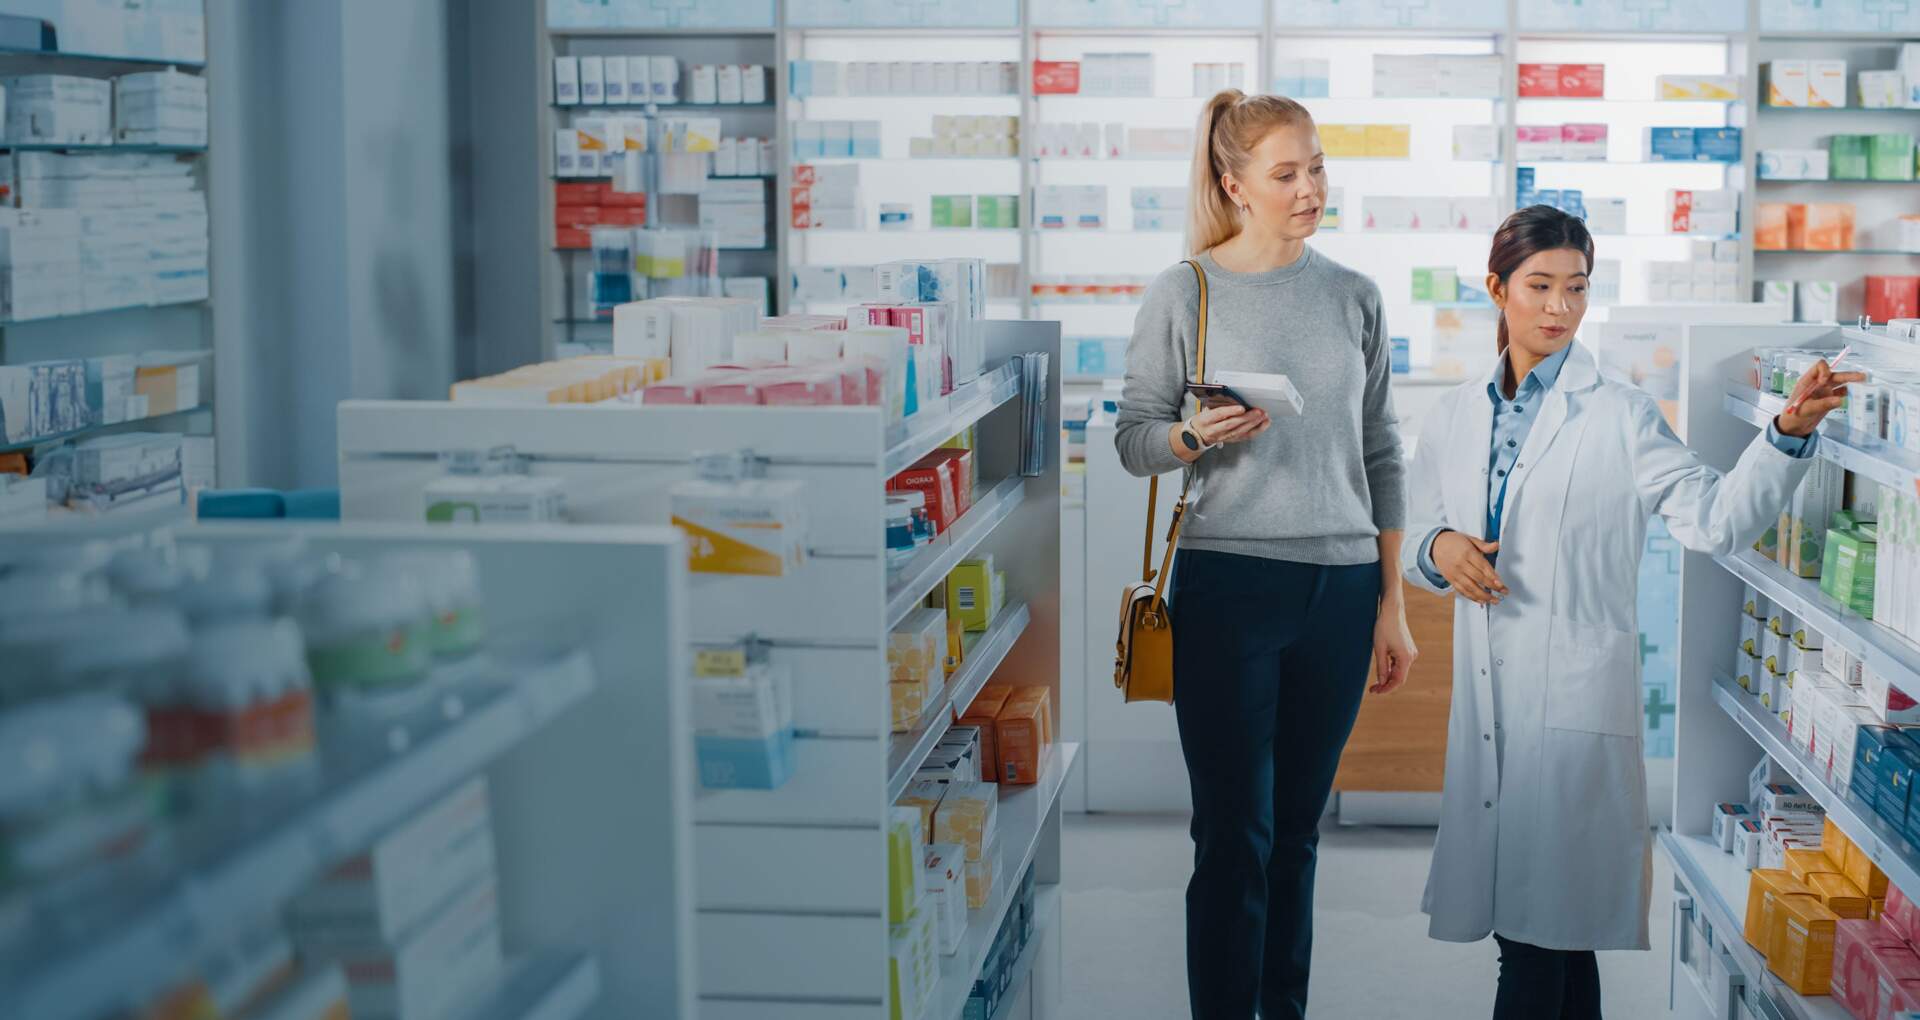 Une femme consulte les rayons de la pharmacie avec un professionnel de santé à ses côtés